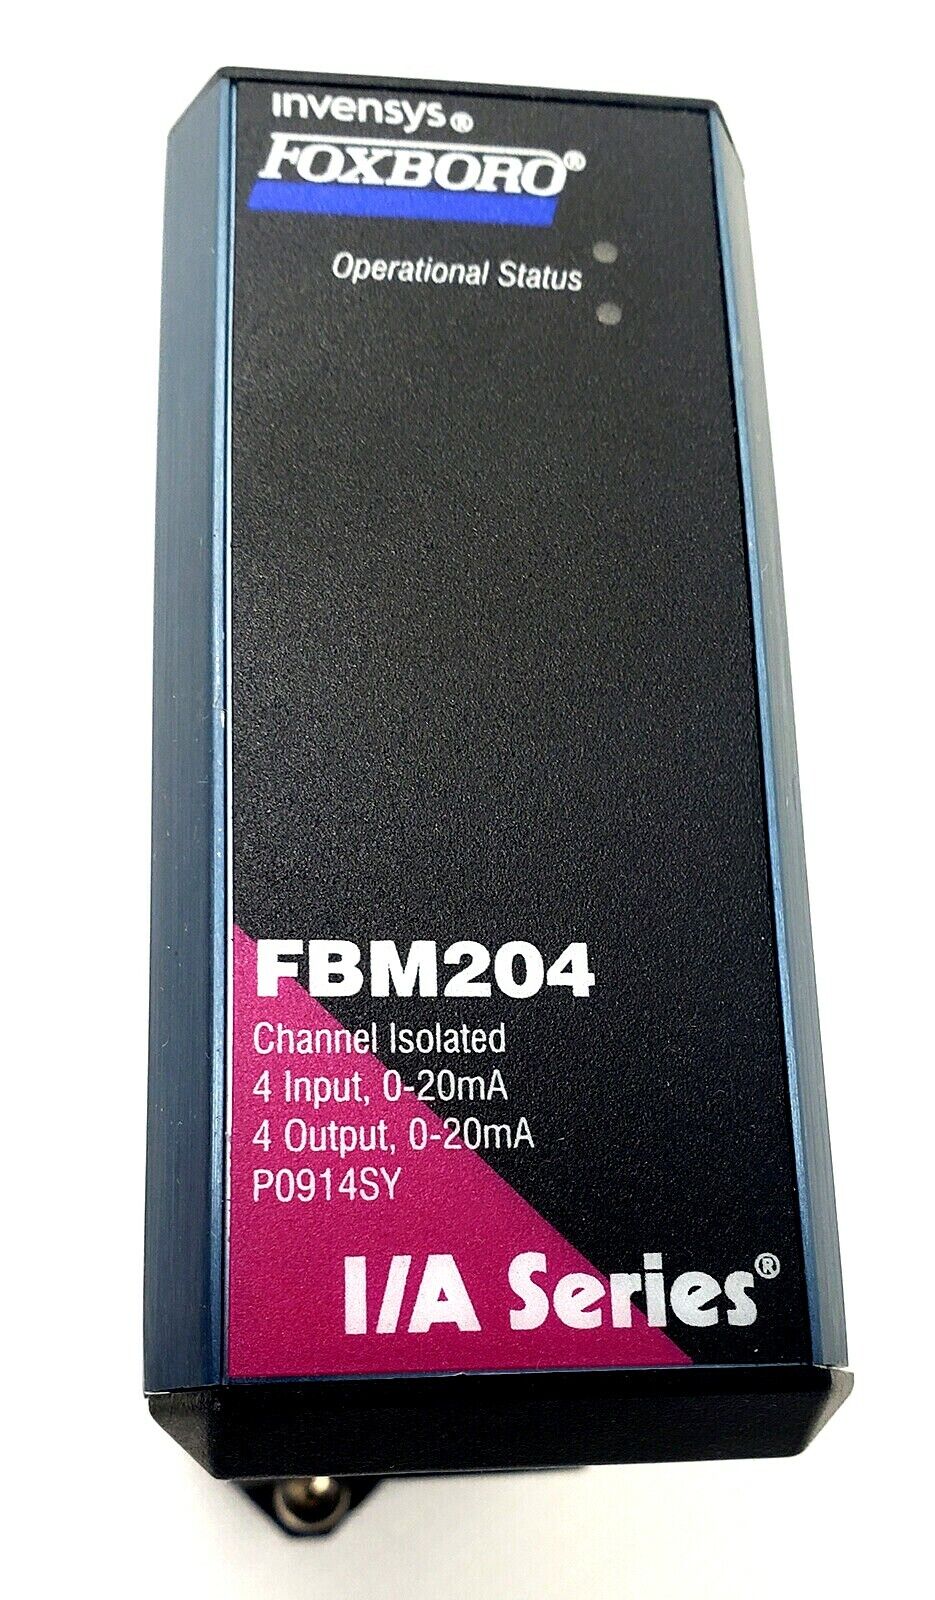 (FBM230 频道隔离模块)FOXBORO 福克斯波罗的模块 施耐德 全新正品原装现货供应